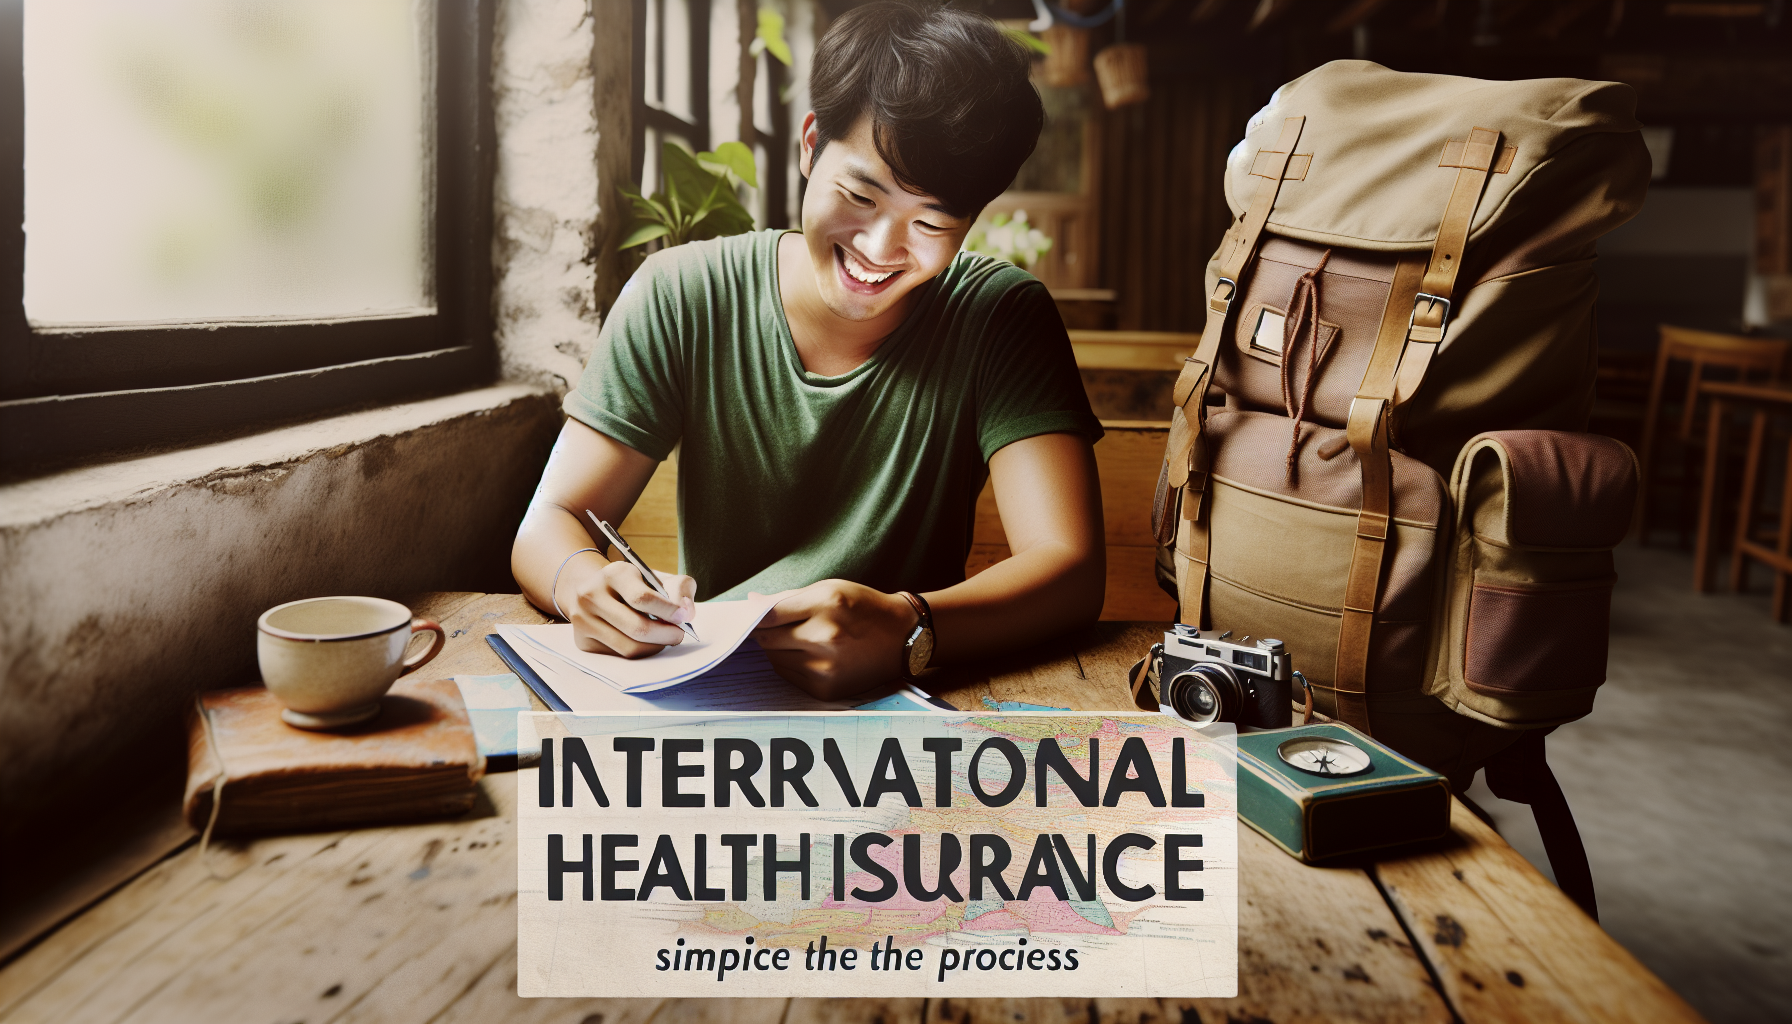 découvrez les démarches pour souscrire à une assurance santé internationale afin de vous protéger lors de vos voyages à l'étranger.